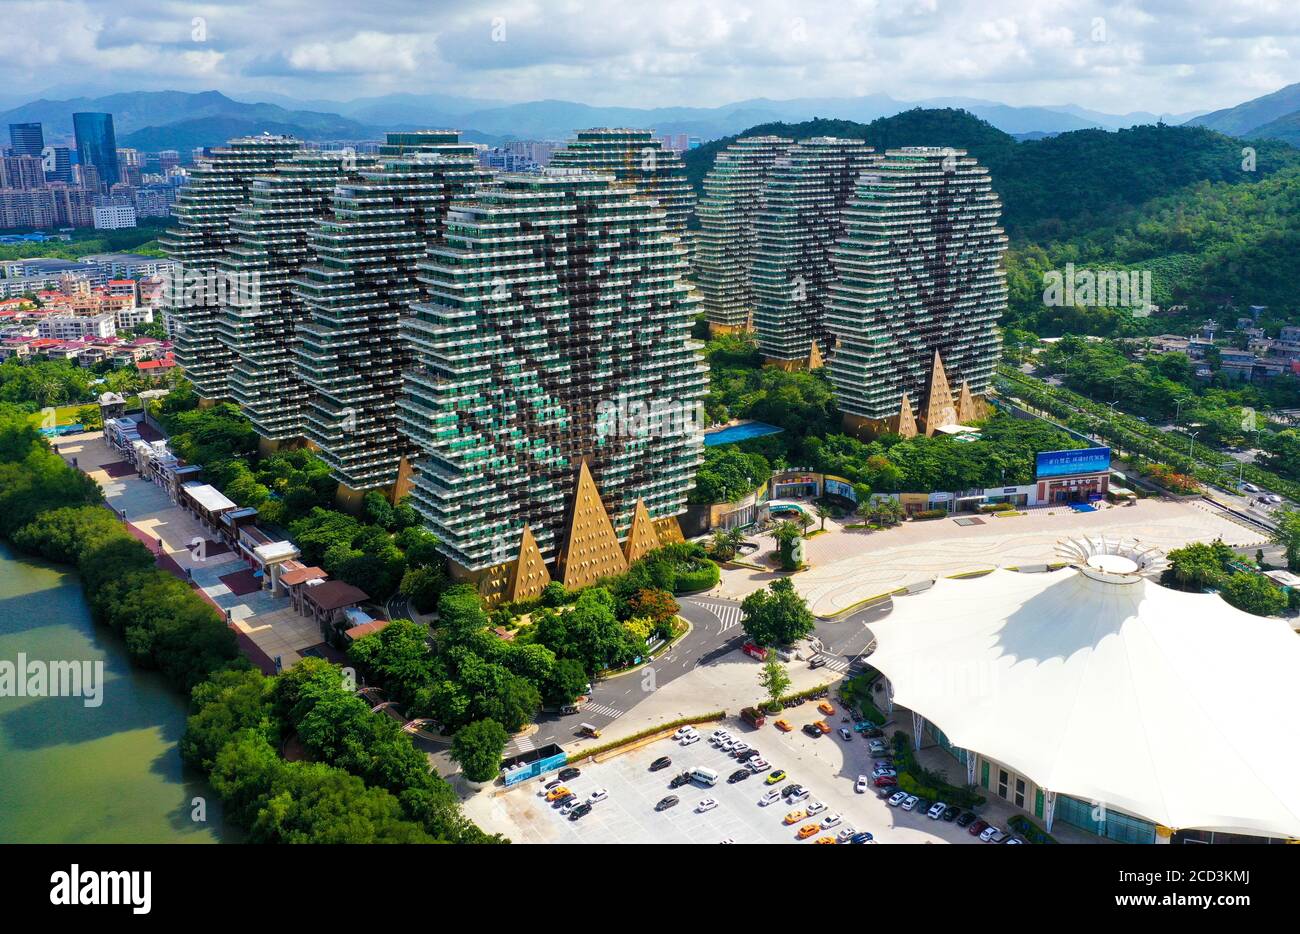 Une vue aérienne du Beauty Crown Hotel, qui ressemble à neuf arbres énormes du jeu d'ordinateur Minecraft, attirant l'attention des touristes et s'asseoir Banque D'Images